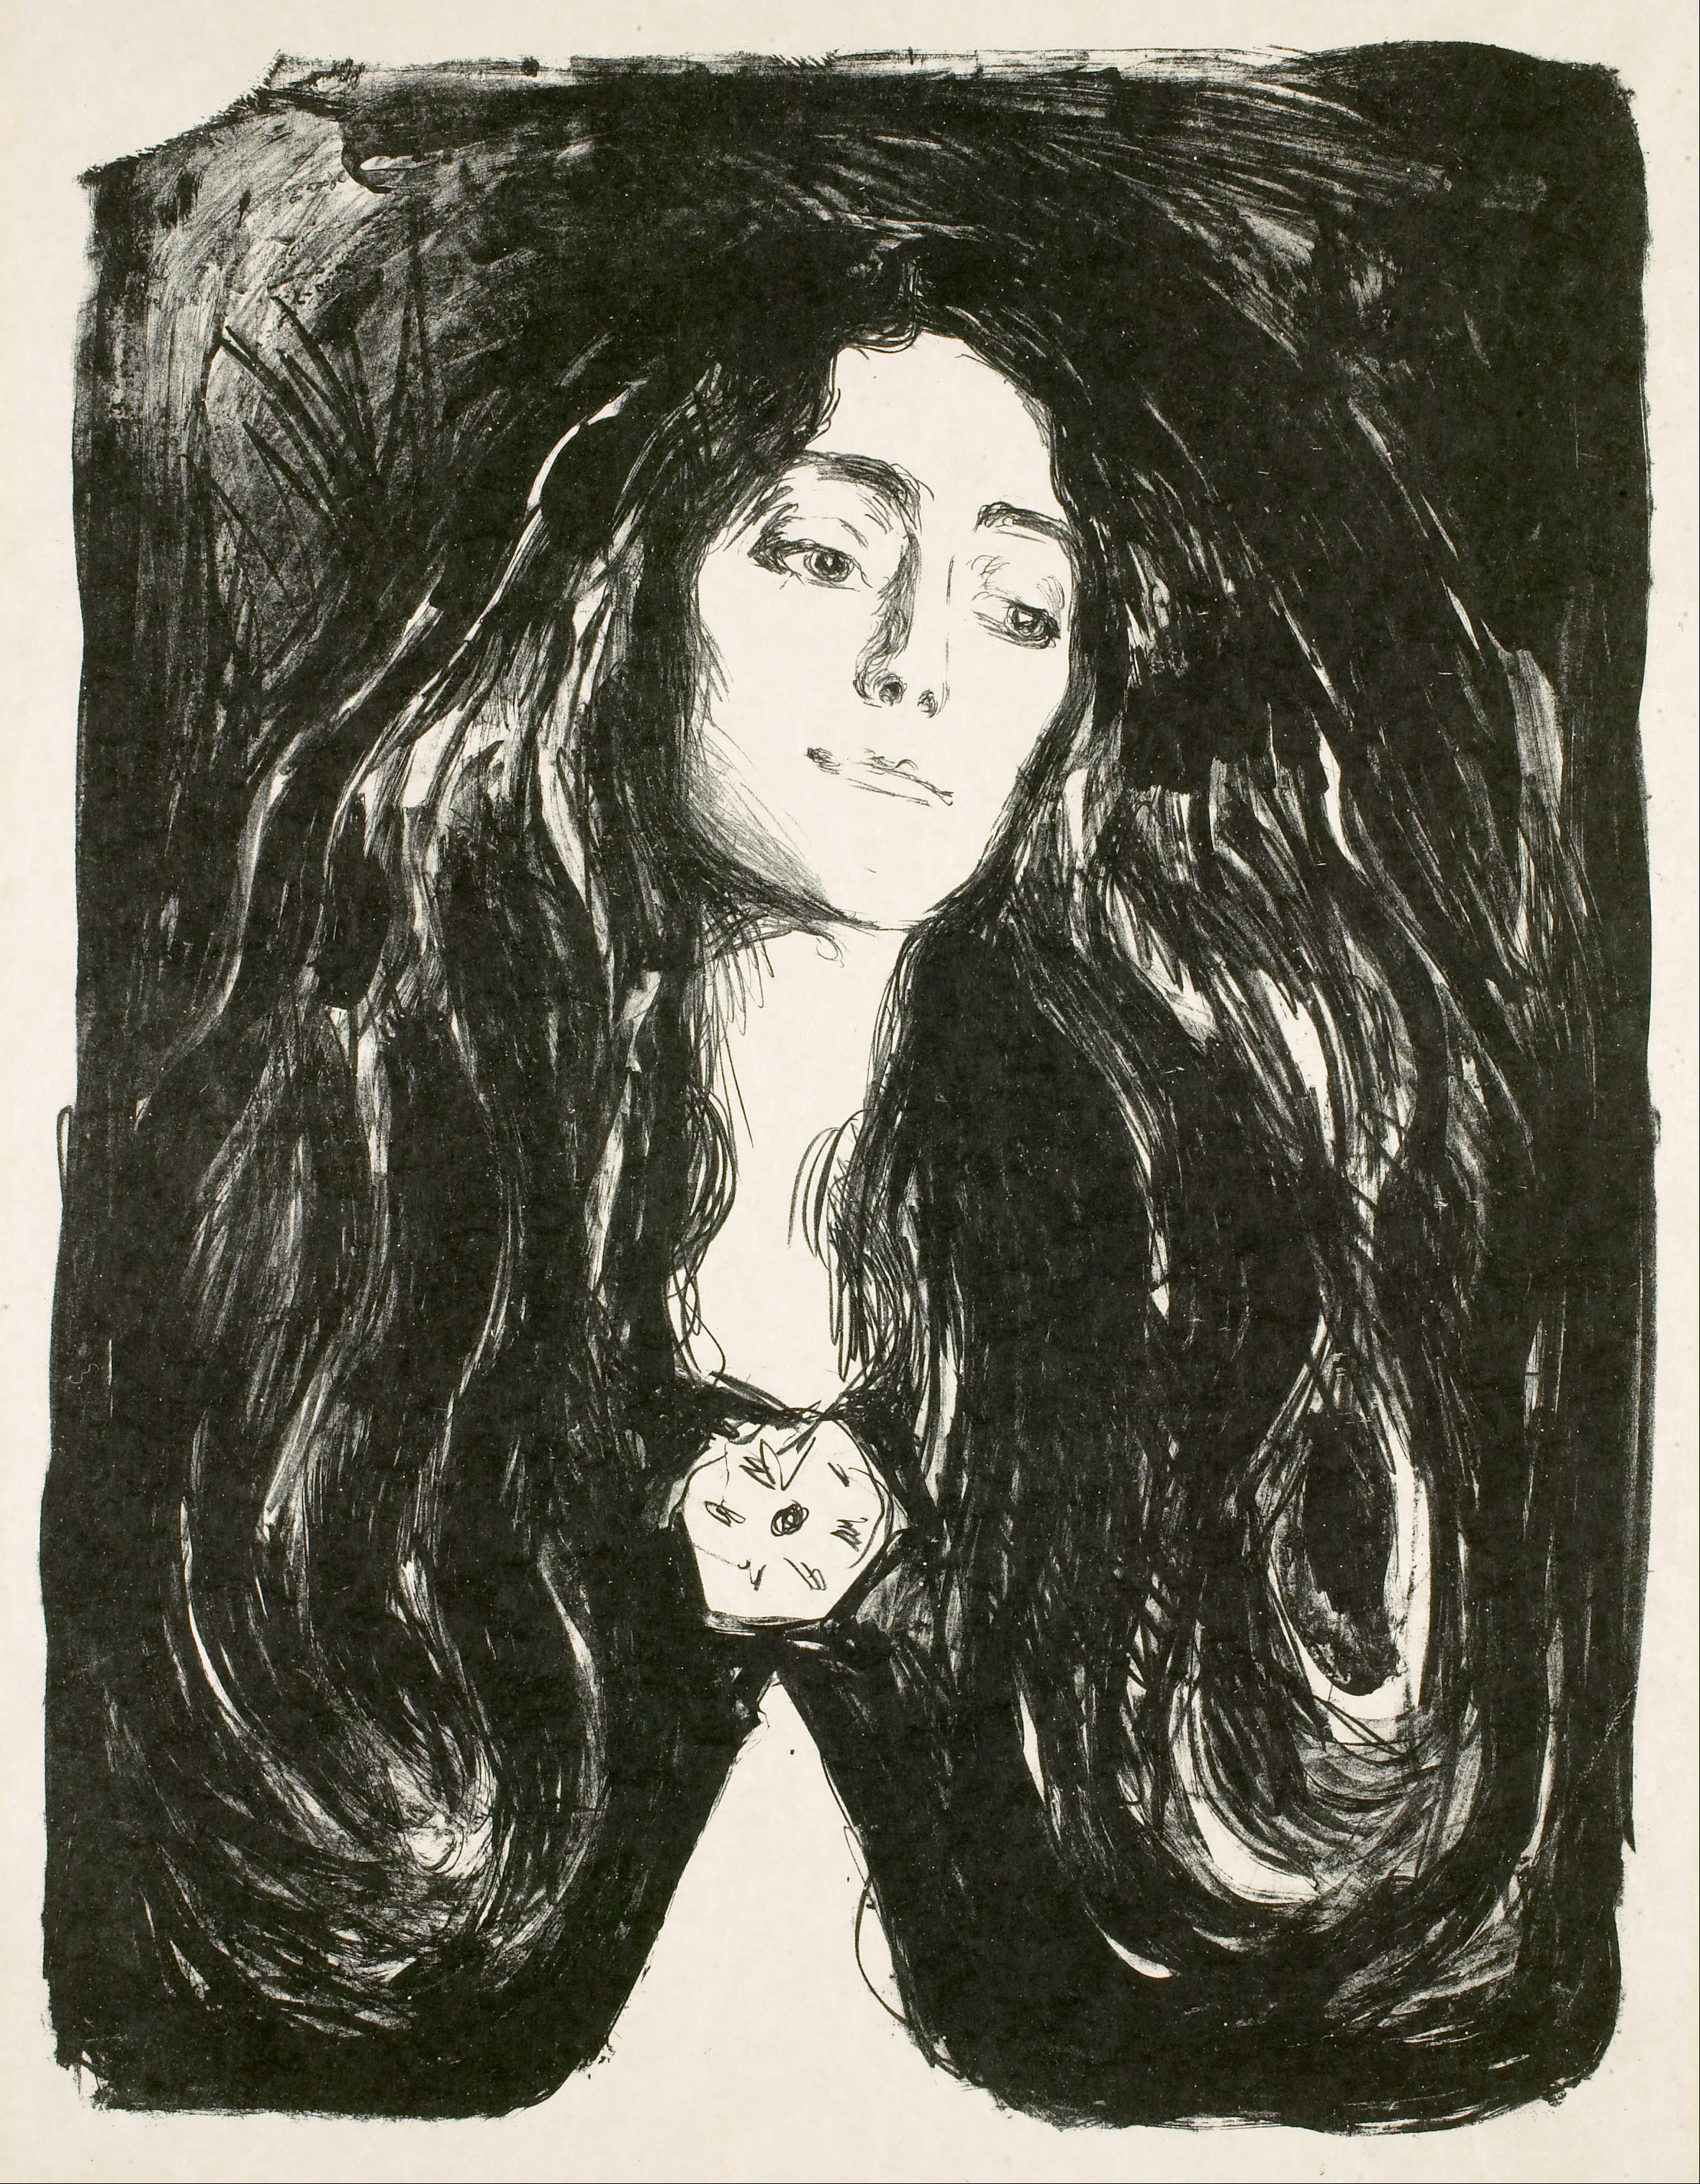 الهدية. إيفا مودوكي by Edvard Munch - 1903م - 53.2 x 76 cm 